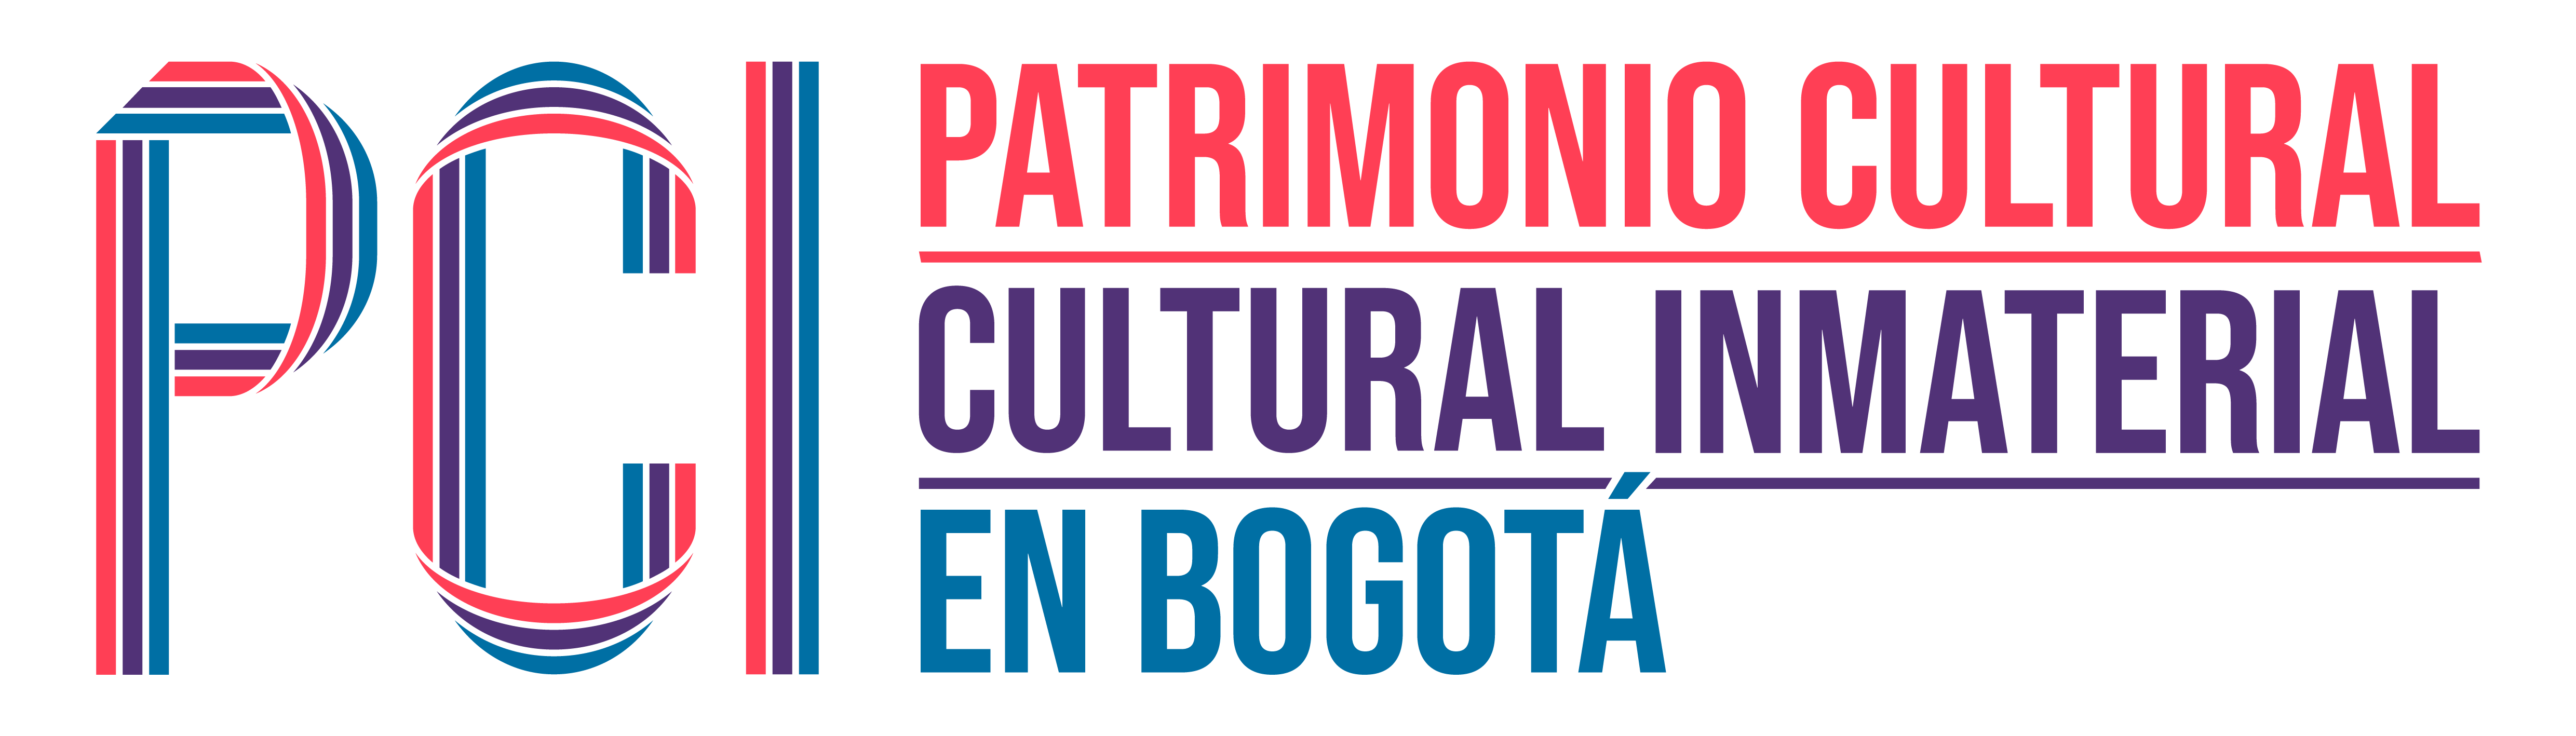 Logo Patrimonio Cultural Inmaterial de Bogotá